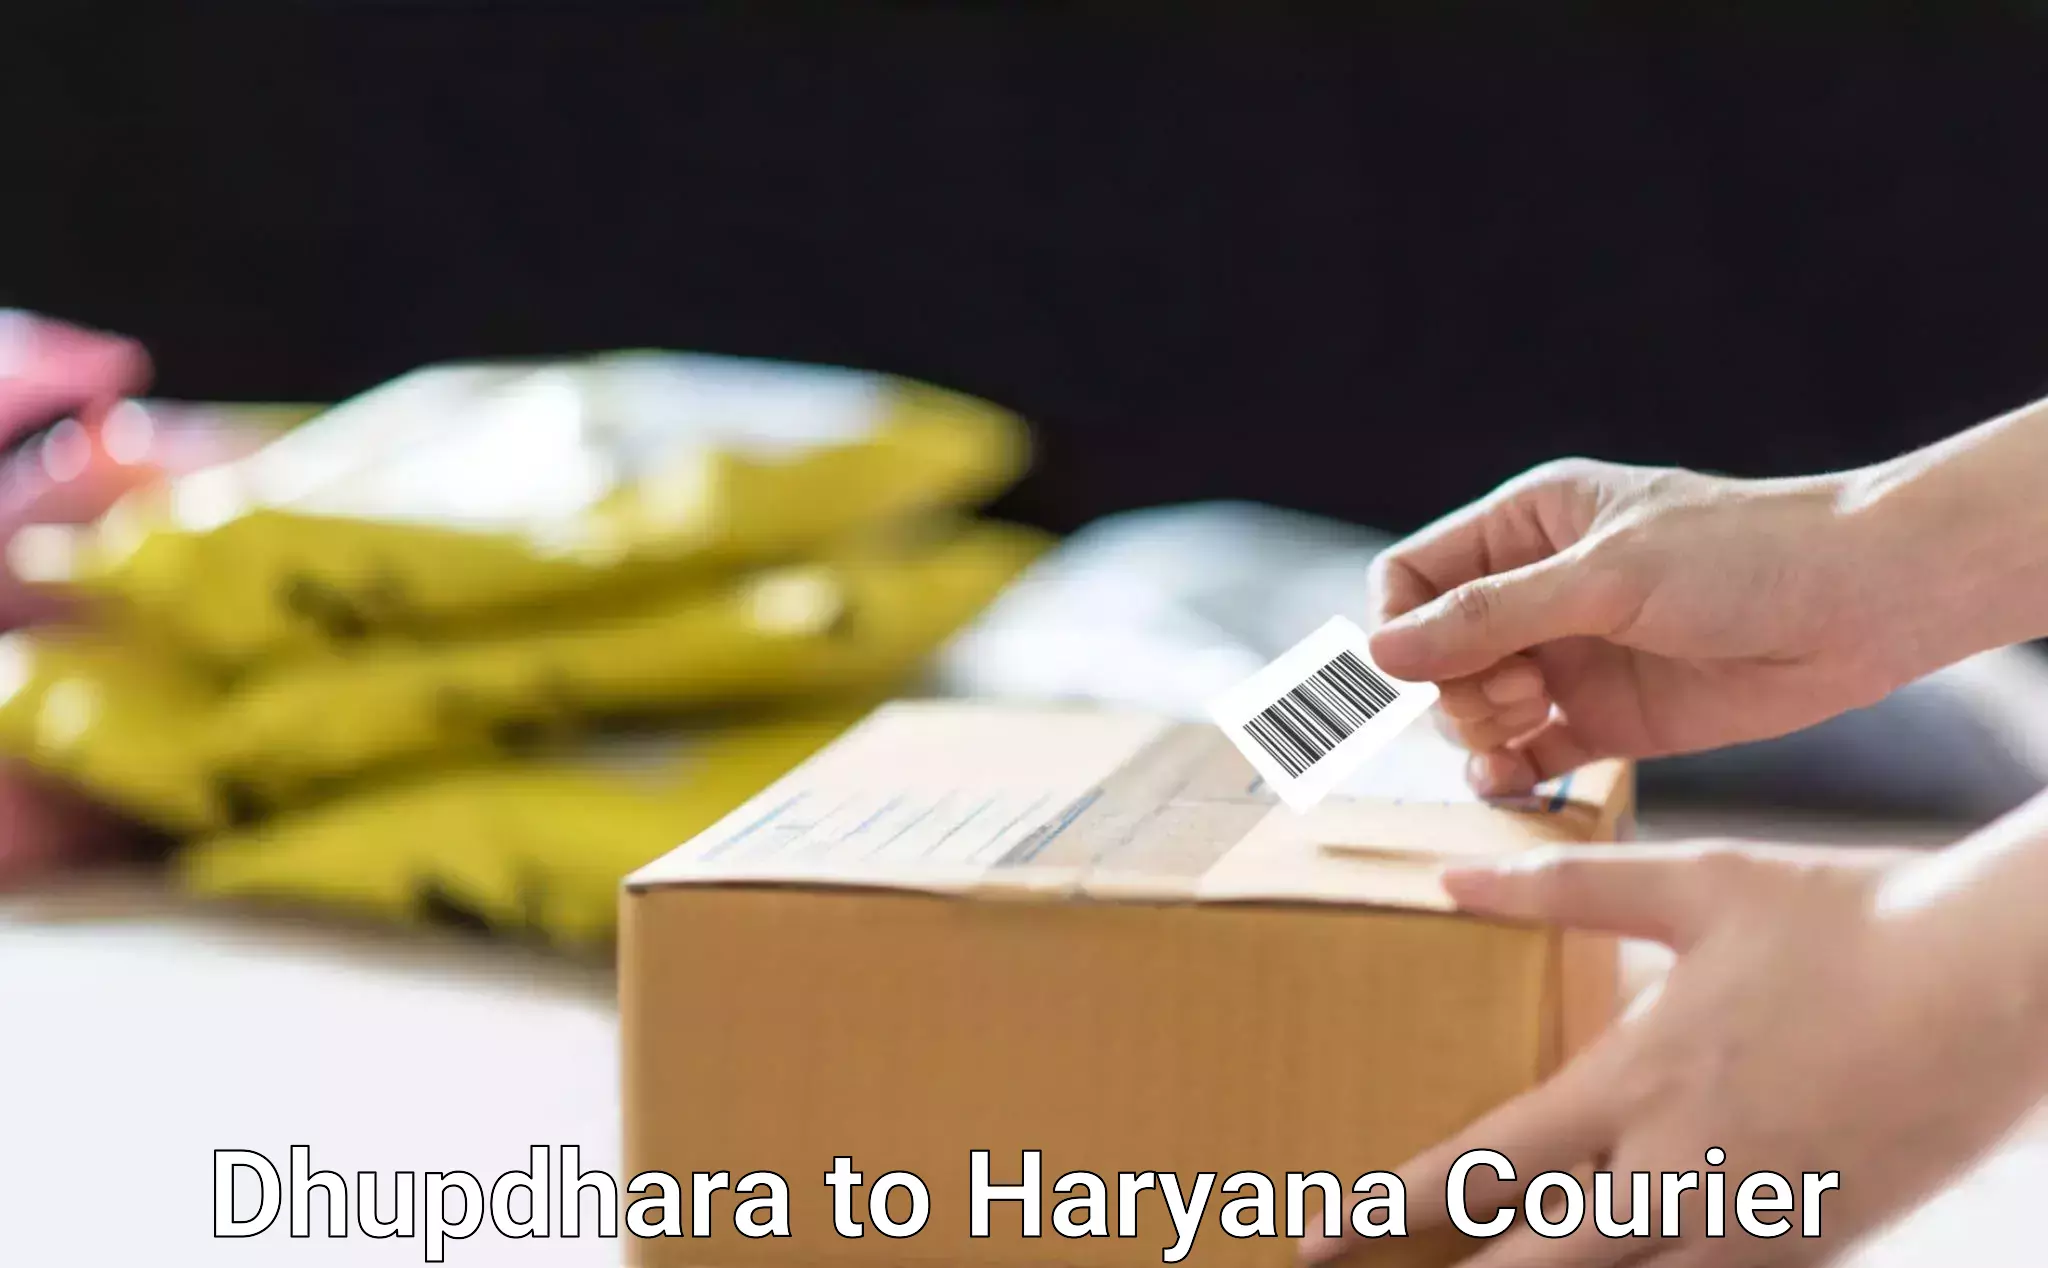 Bulk shipment Dhupdhara to Bilaspur Haryana